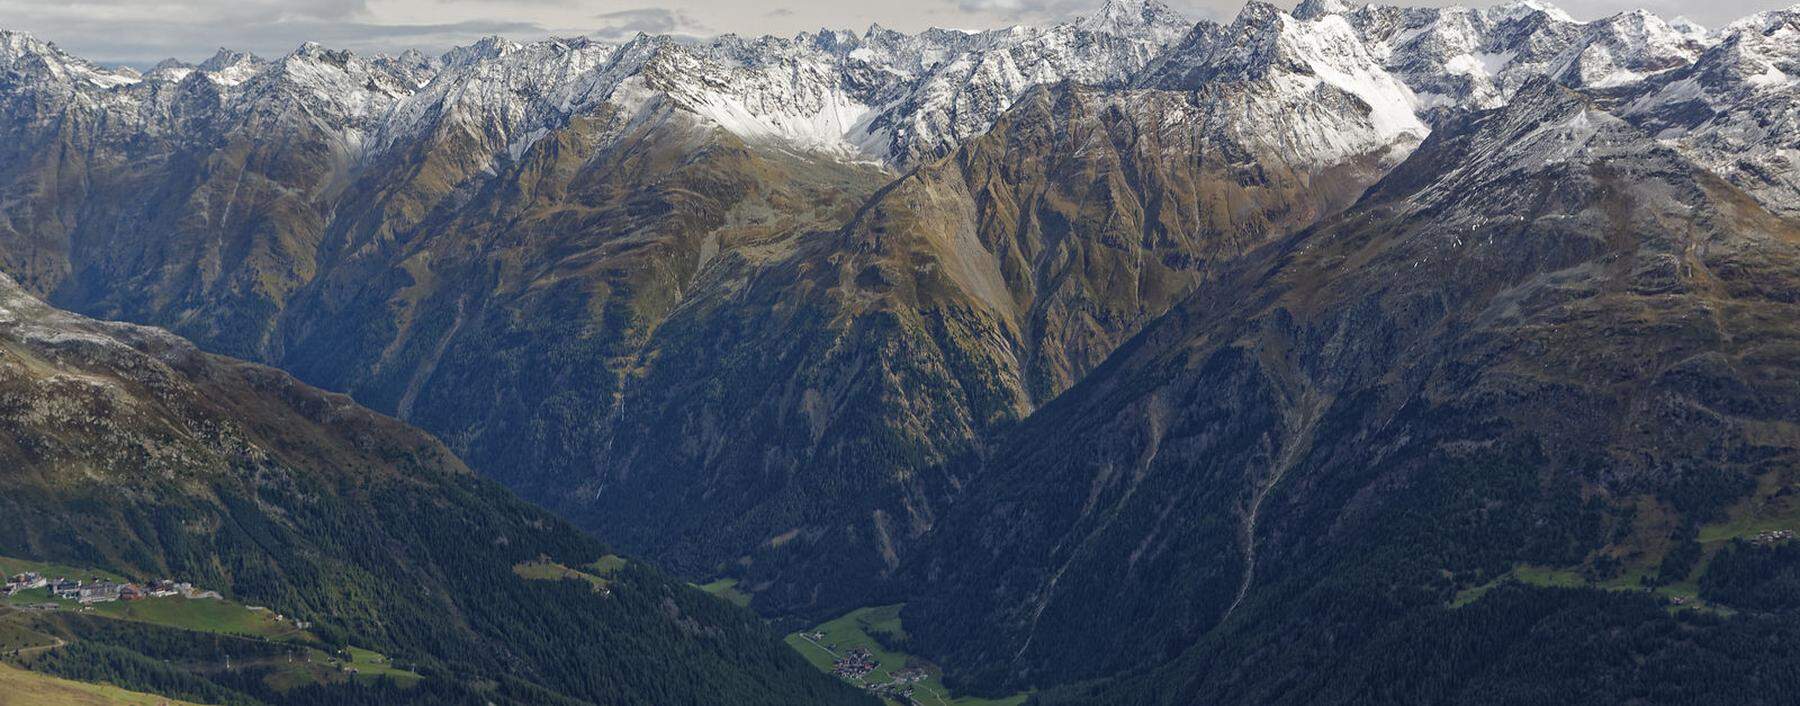 Die Alpen reichen tief in den Erdboden. Geophysiker haben nun ein exaktes Modell ihrer Struktur erstellt. 